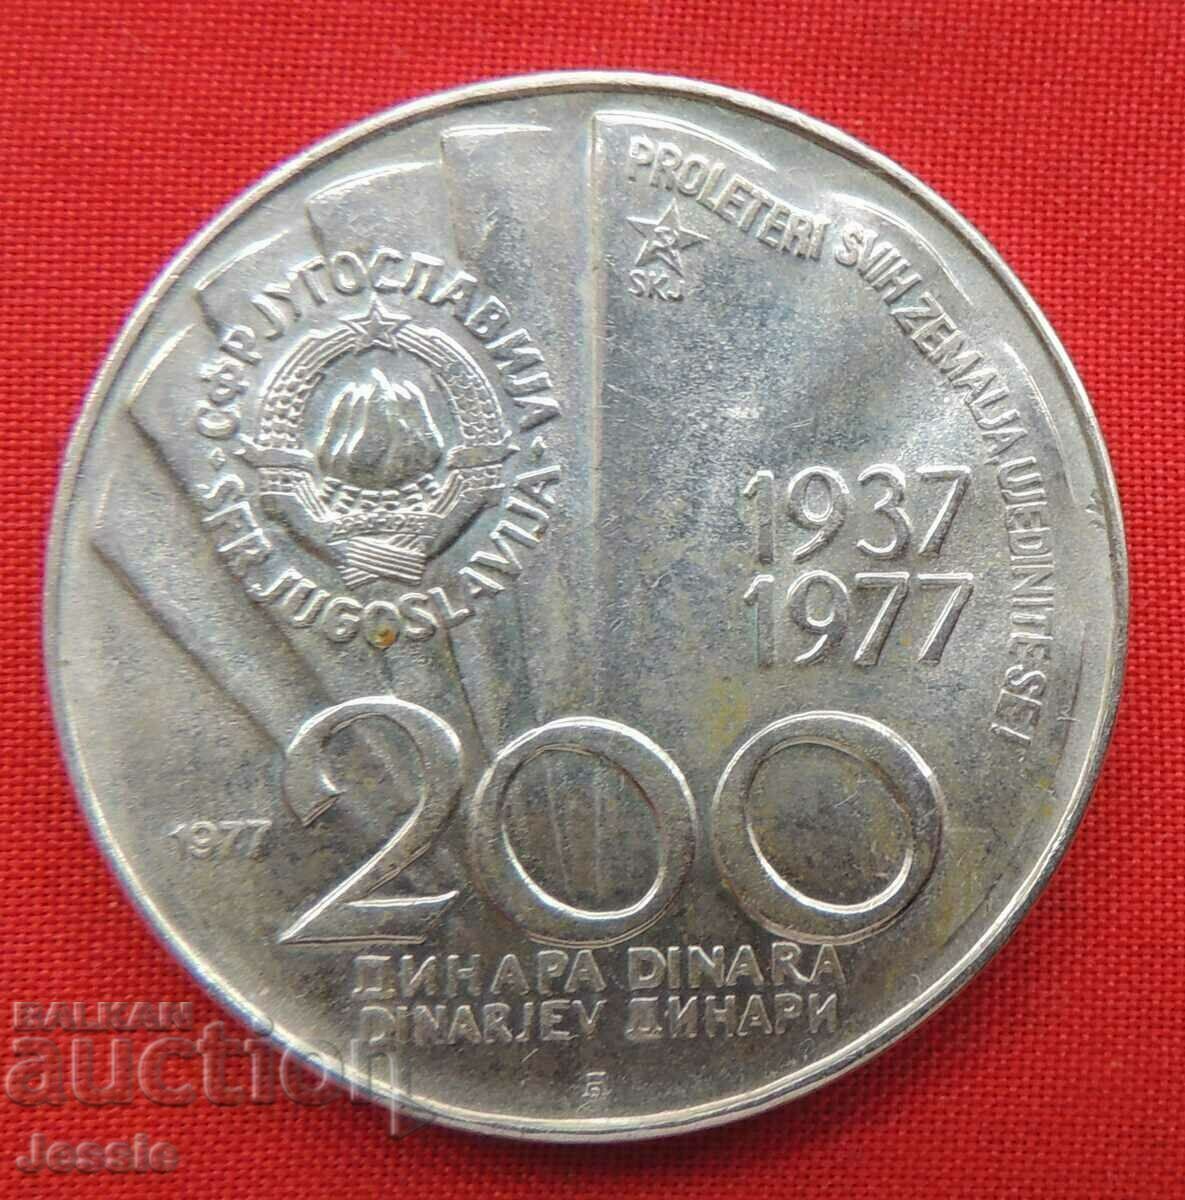 200 dinars 1977 Yugoslavia Tito aged 85.